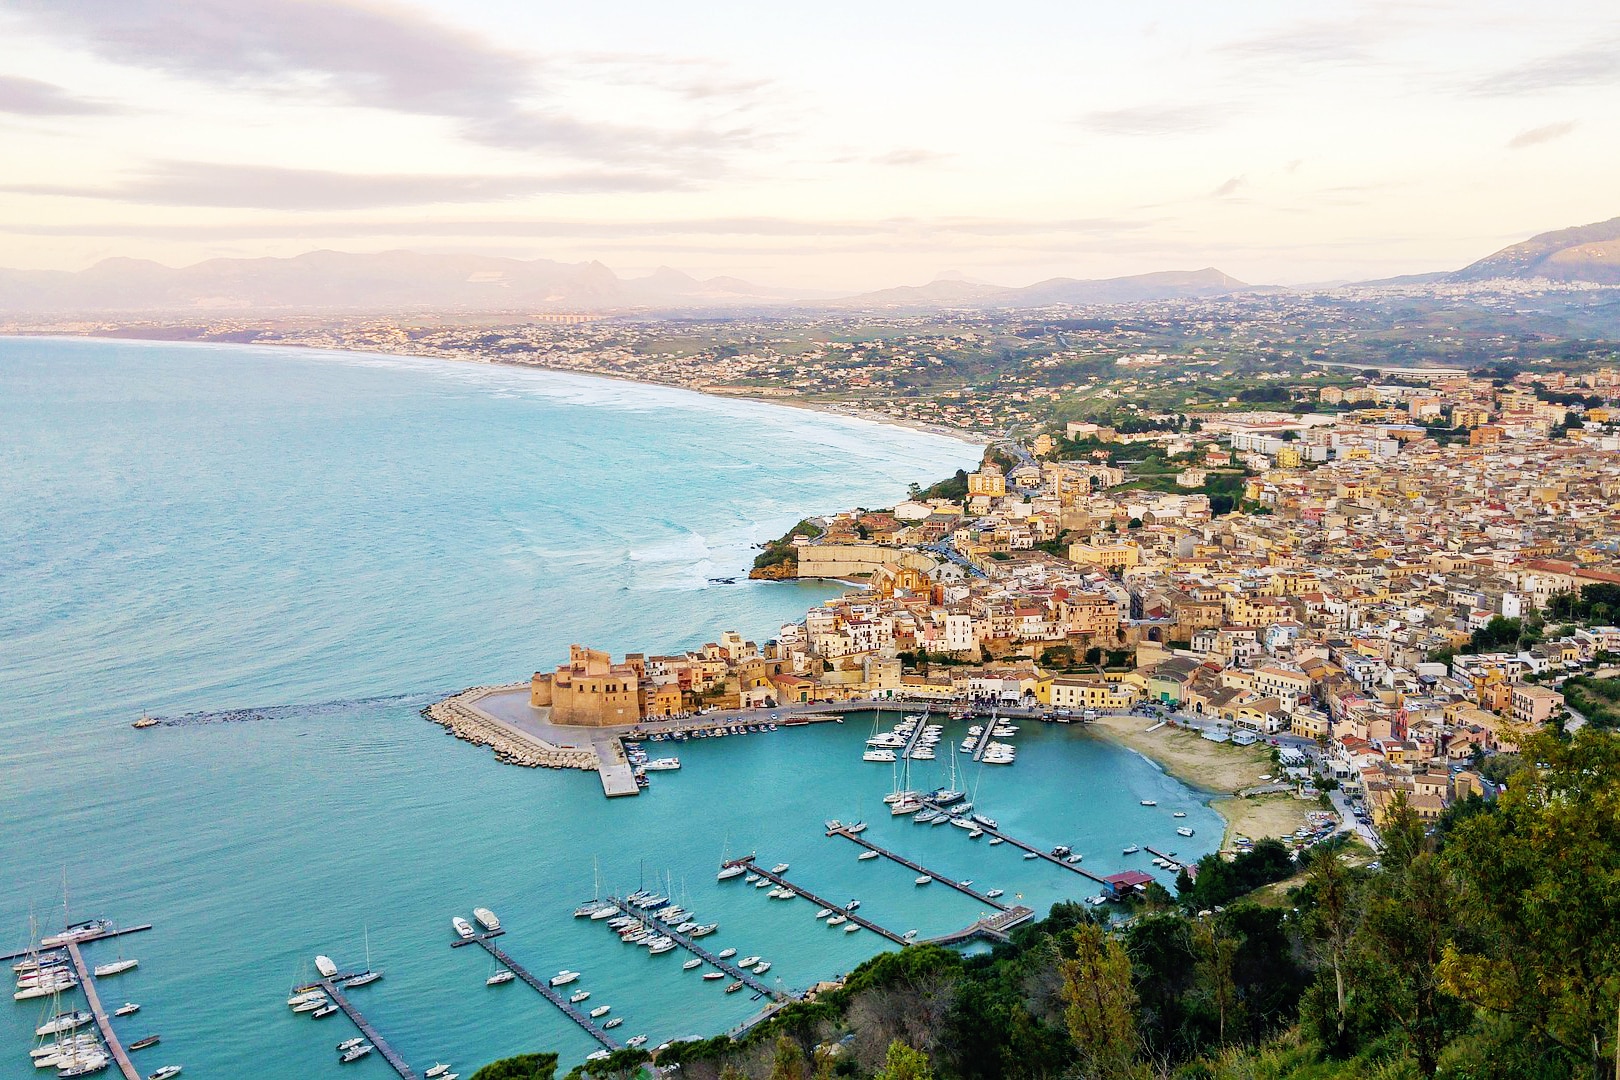 Vacanze in Sicilia: 25 città e borghi da vedere (oltre le solite mete)